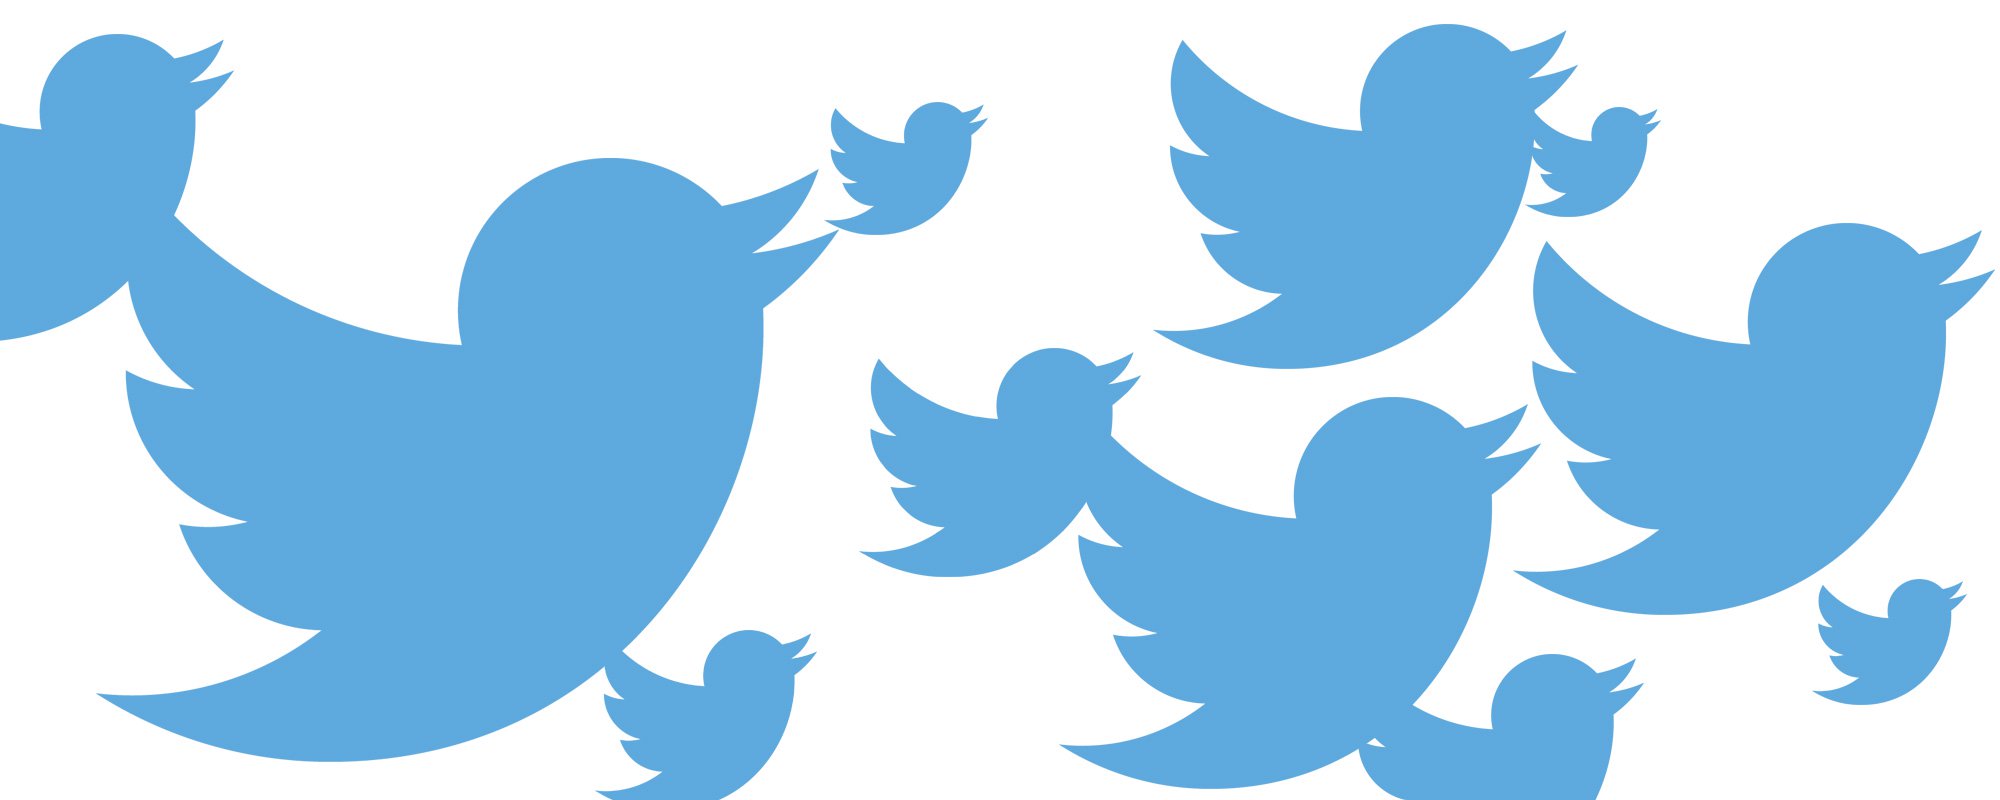 كلمات السر 336 مليون مستخدمي تويتر تم اختراقه بسبب خلل